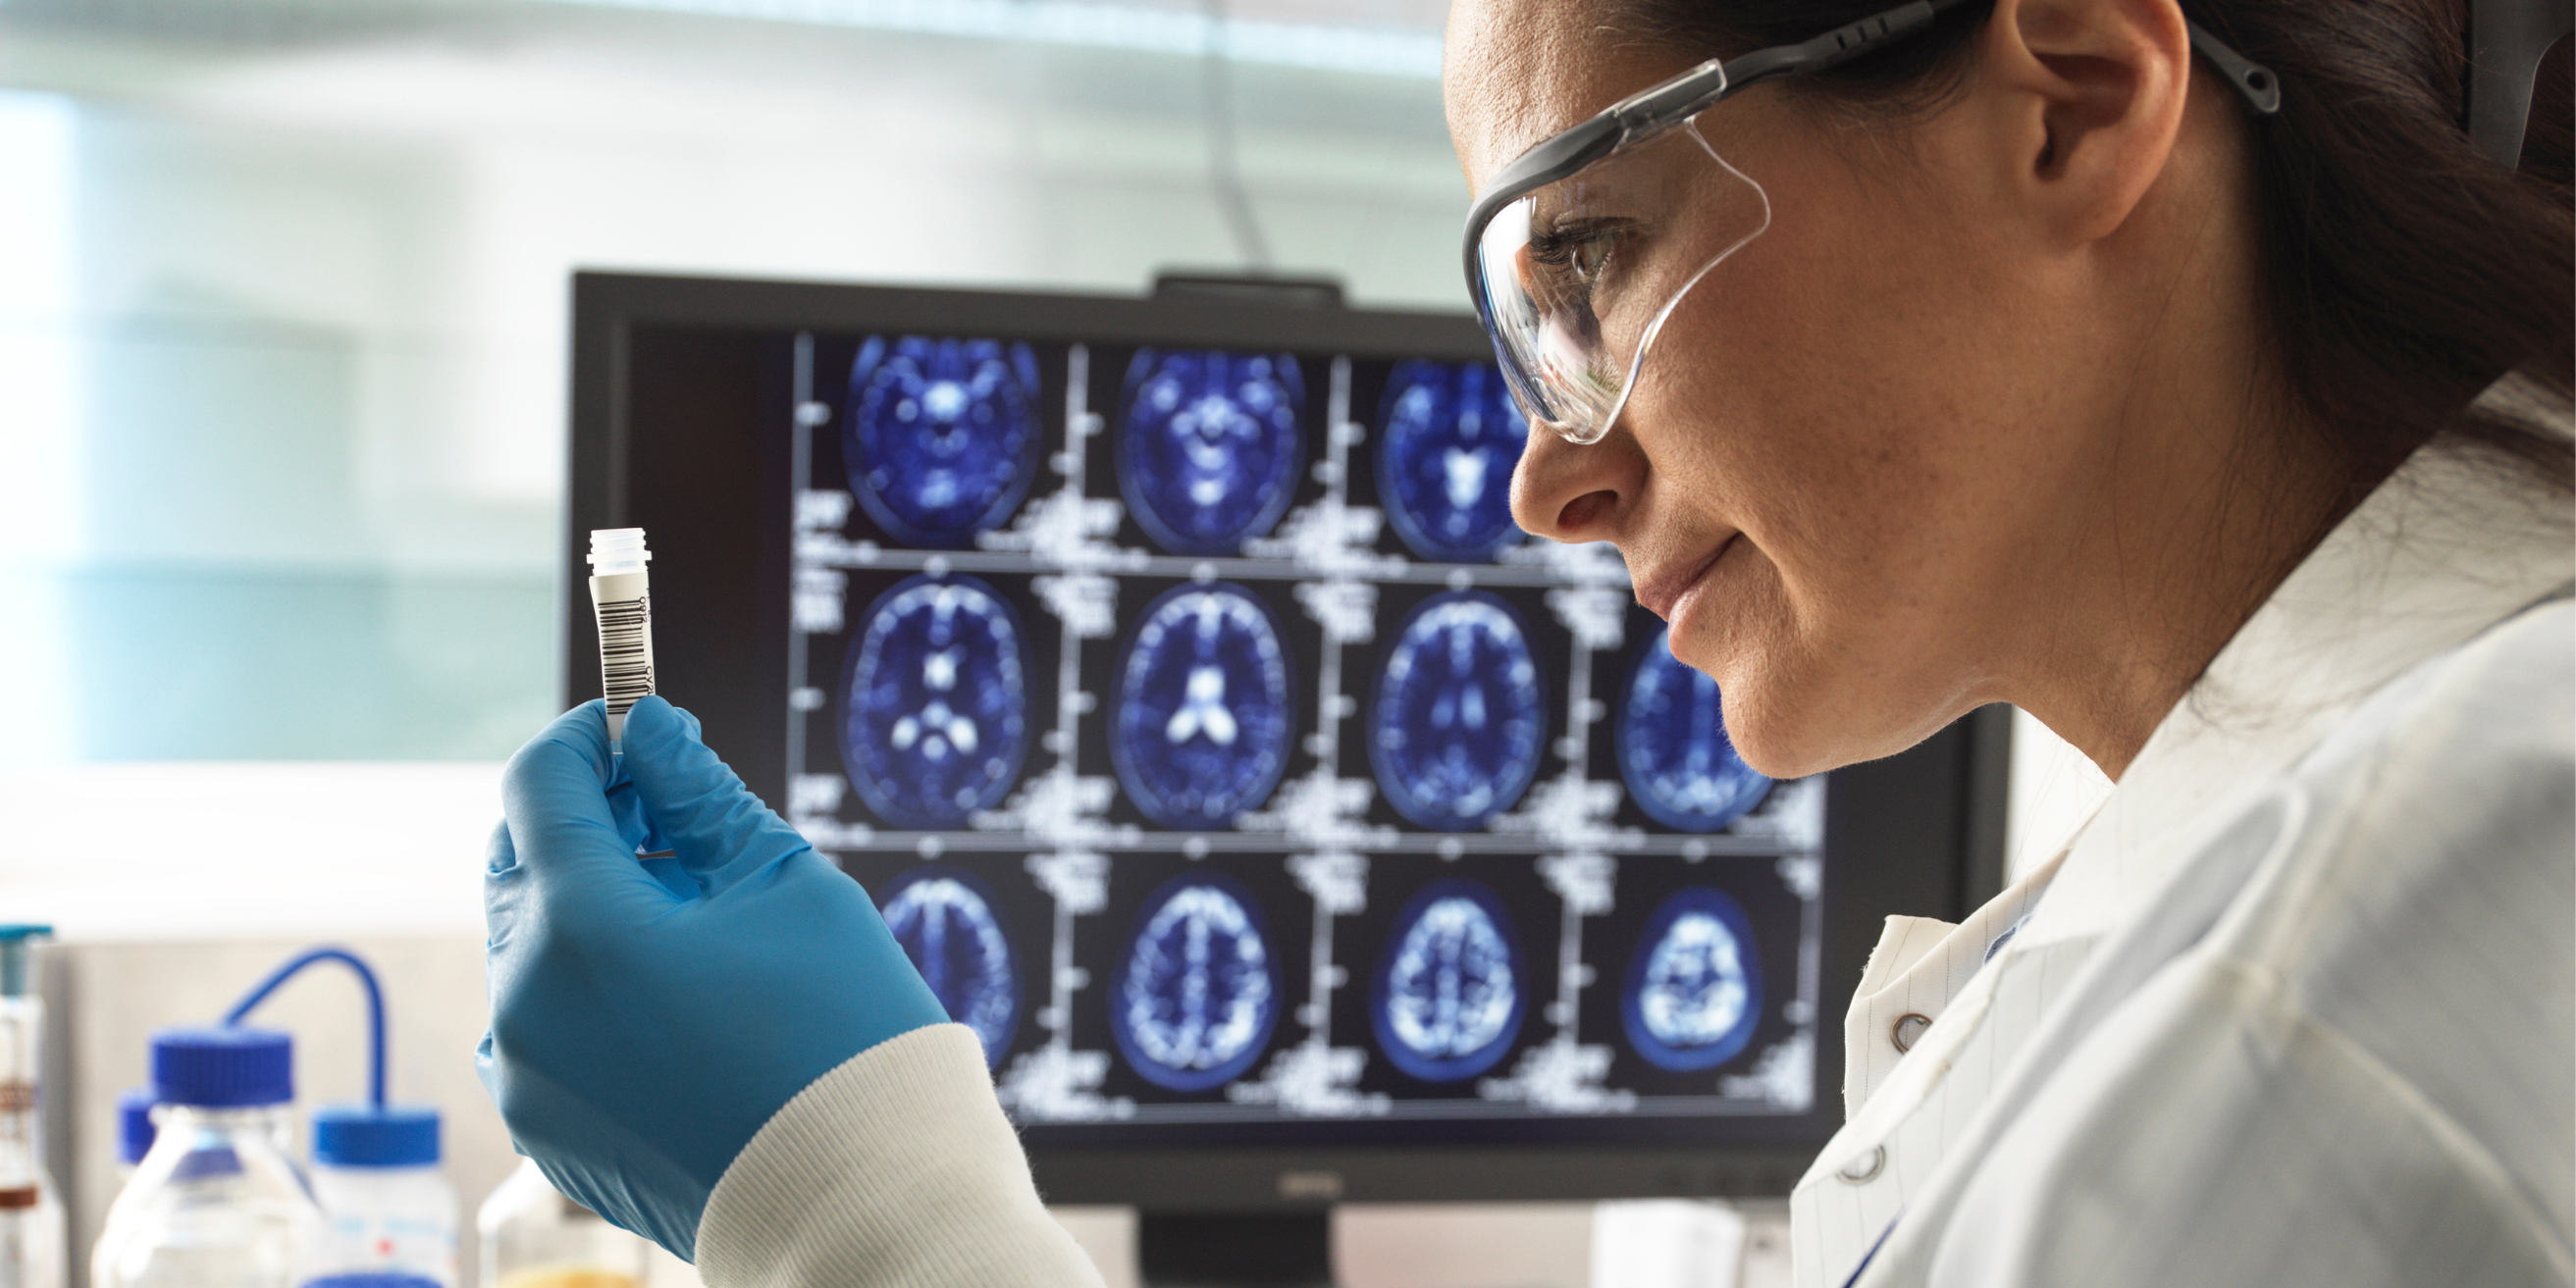 Femme chercheur scientifique avec fiole dan sla main et radiologies du cerveau en arrière-plan